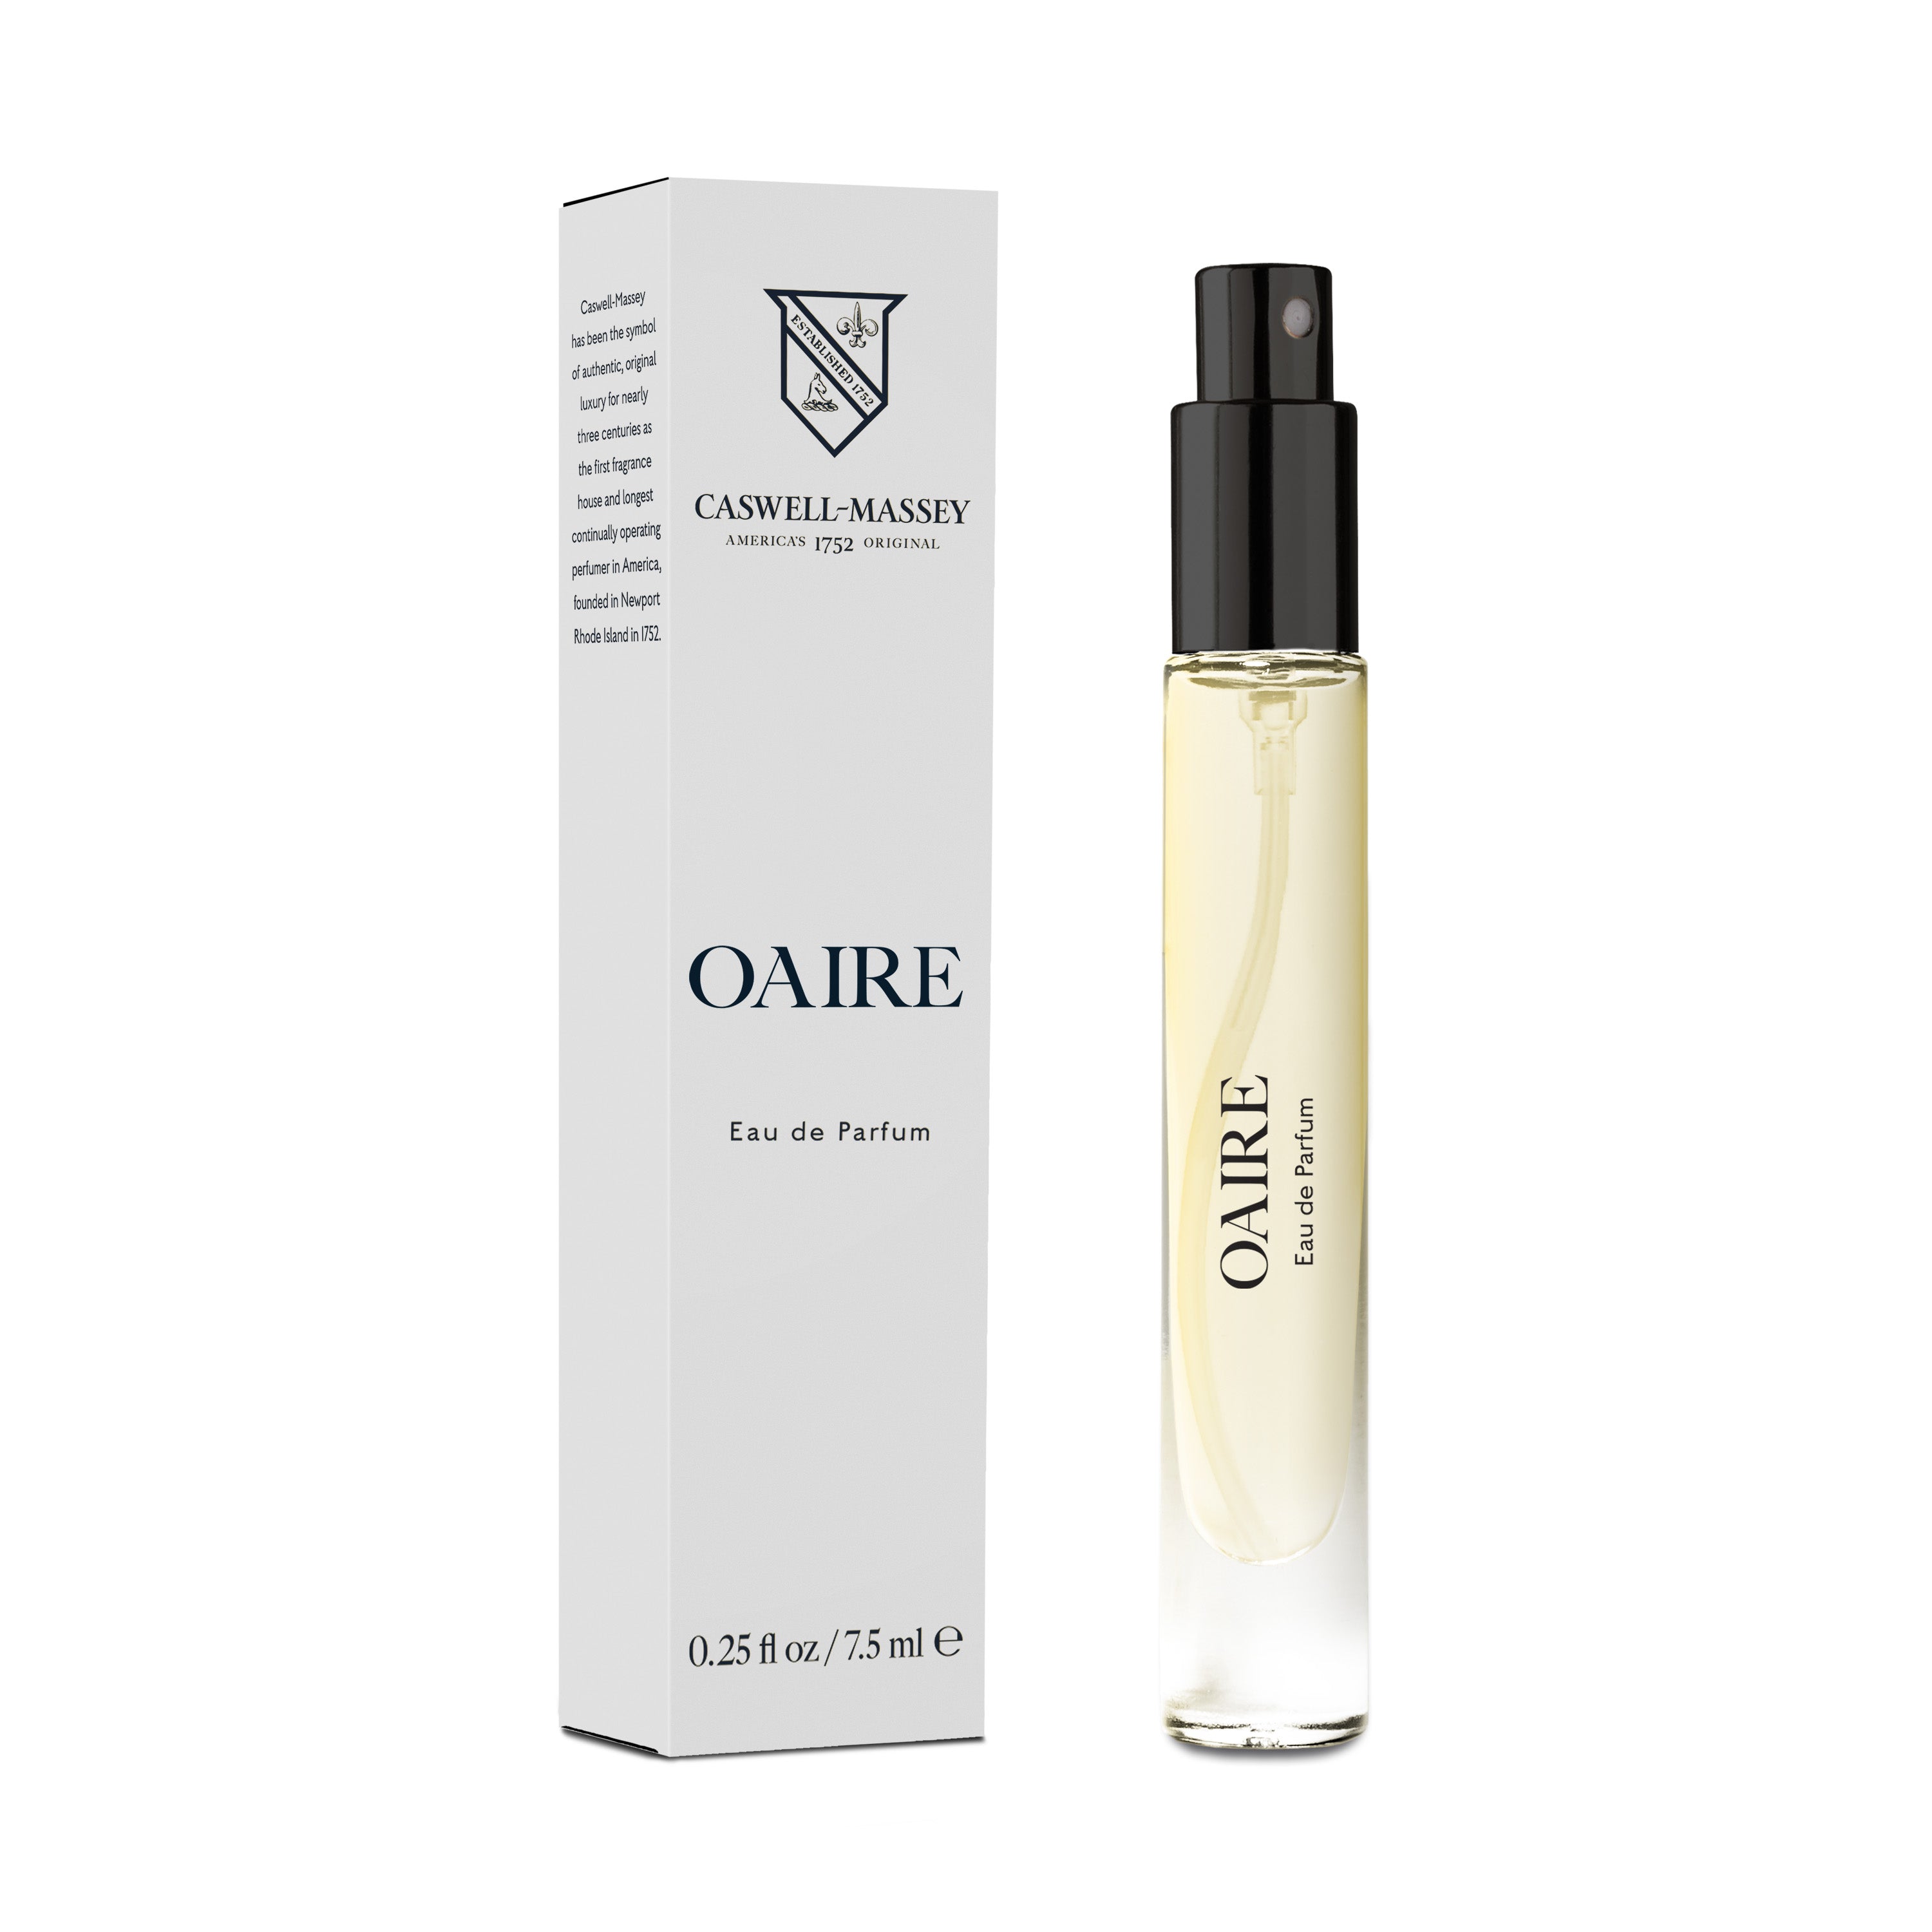 Louis+Vuitton+Turbulences+Perfume+Eau+De+Parfum+3.4oz+100ml for sale online